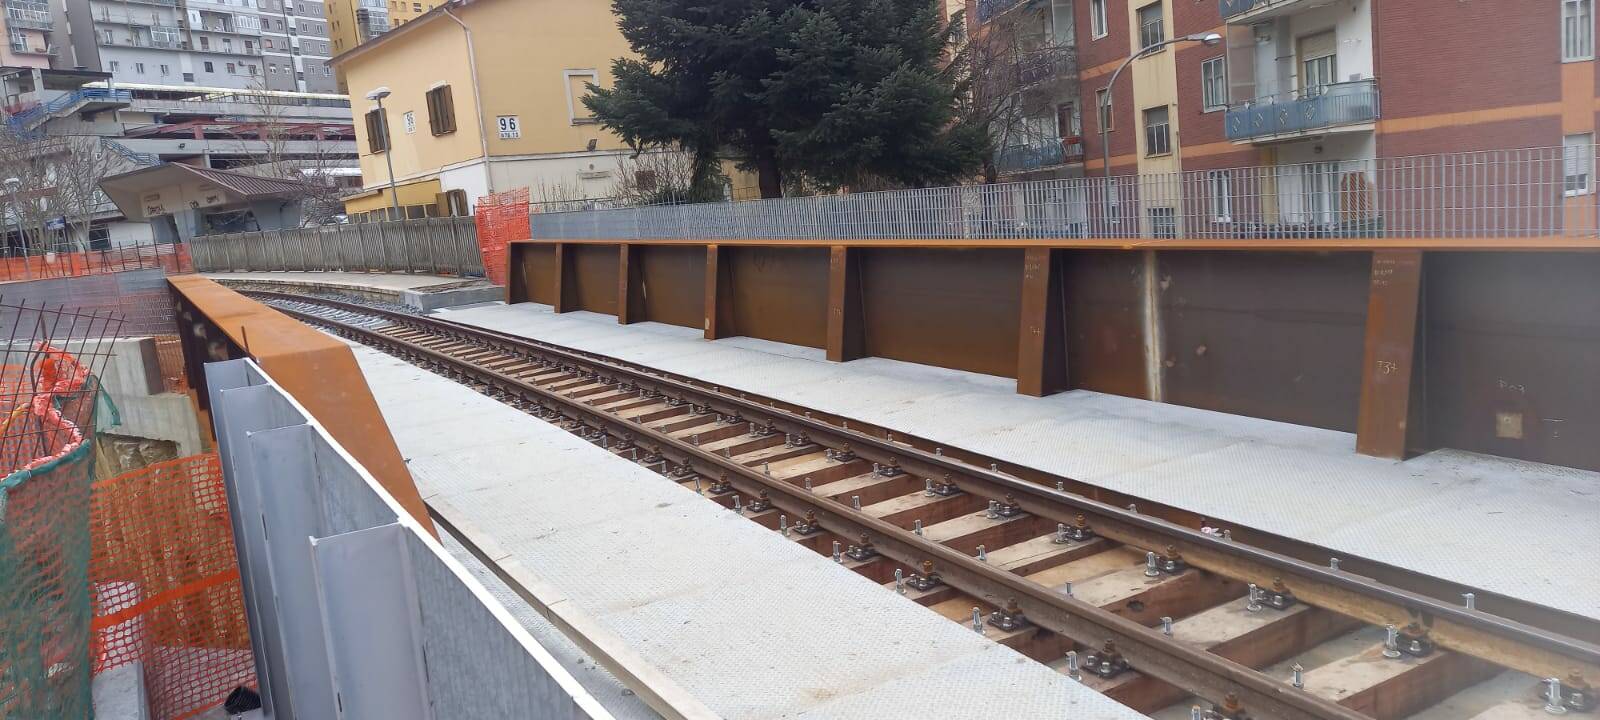 Fal, riaperta linea ferroviaria Potenza S. Maria-Potenza inferiore